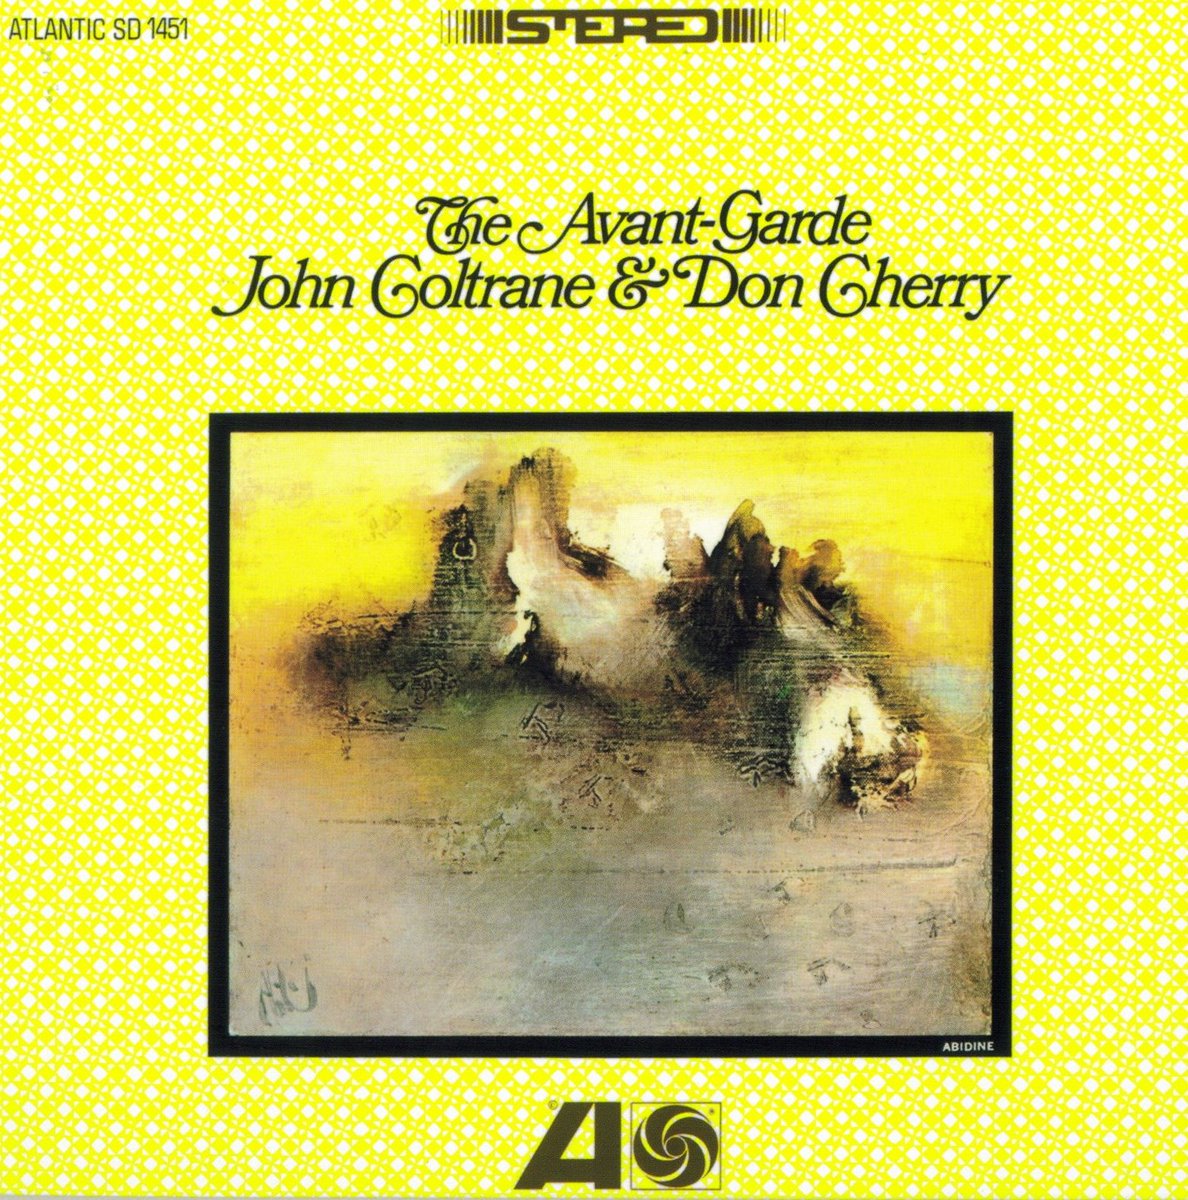 Abidin Dino'nun Atlantic Records'un ortağı Nasuhi Ertegün'ün siparişi üzerine tasarladığı albüm kapaklarından... -Herbie Mann, At The Village Gate (1961) -Modern Jazz Quartet; Third Stream Music (1963) -John Coltrane, Don Cherry; The Avant-Garde (1966)